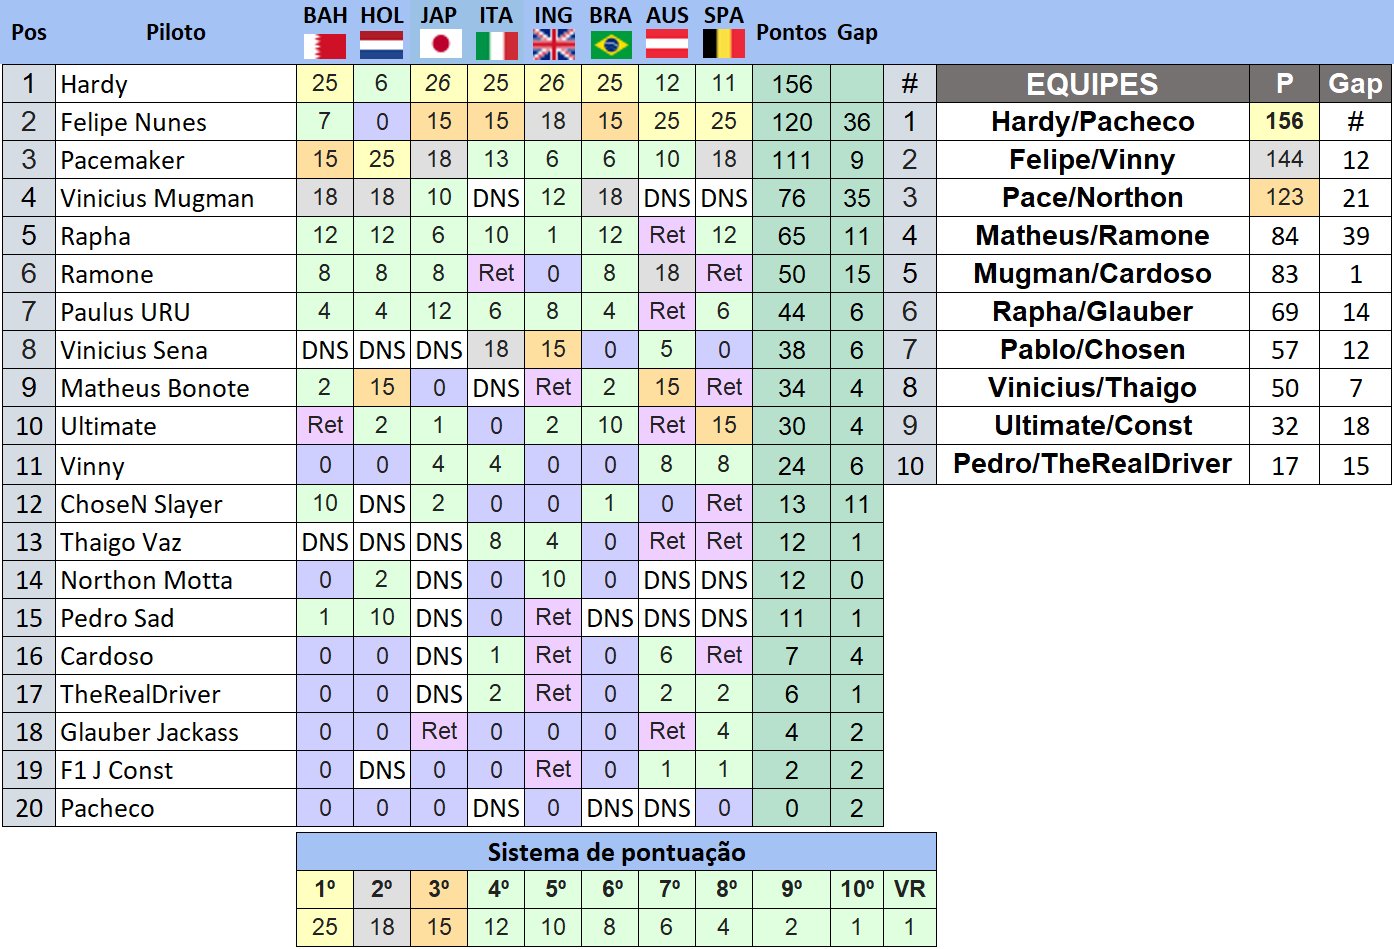 Tabela F1 2021 Edição 1 Light – Campeonatos F1 PC